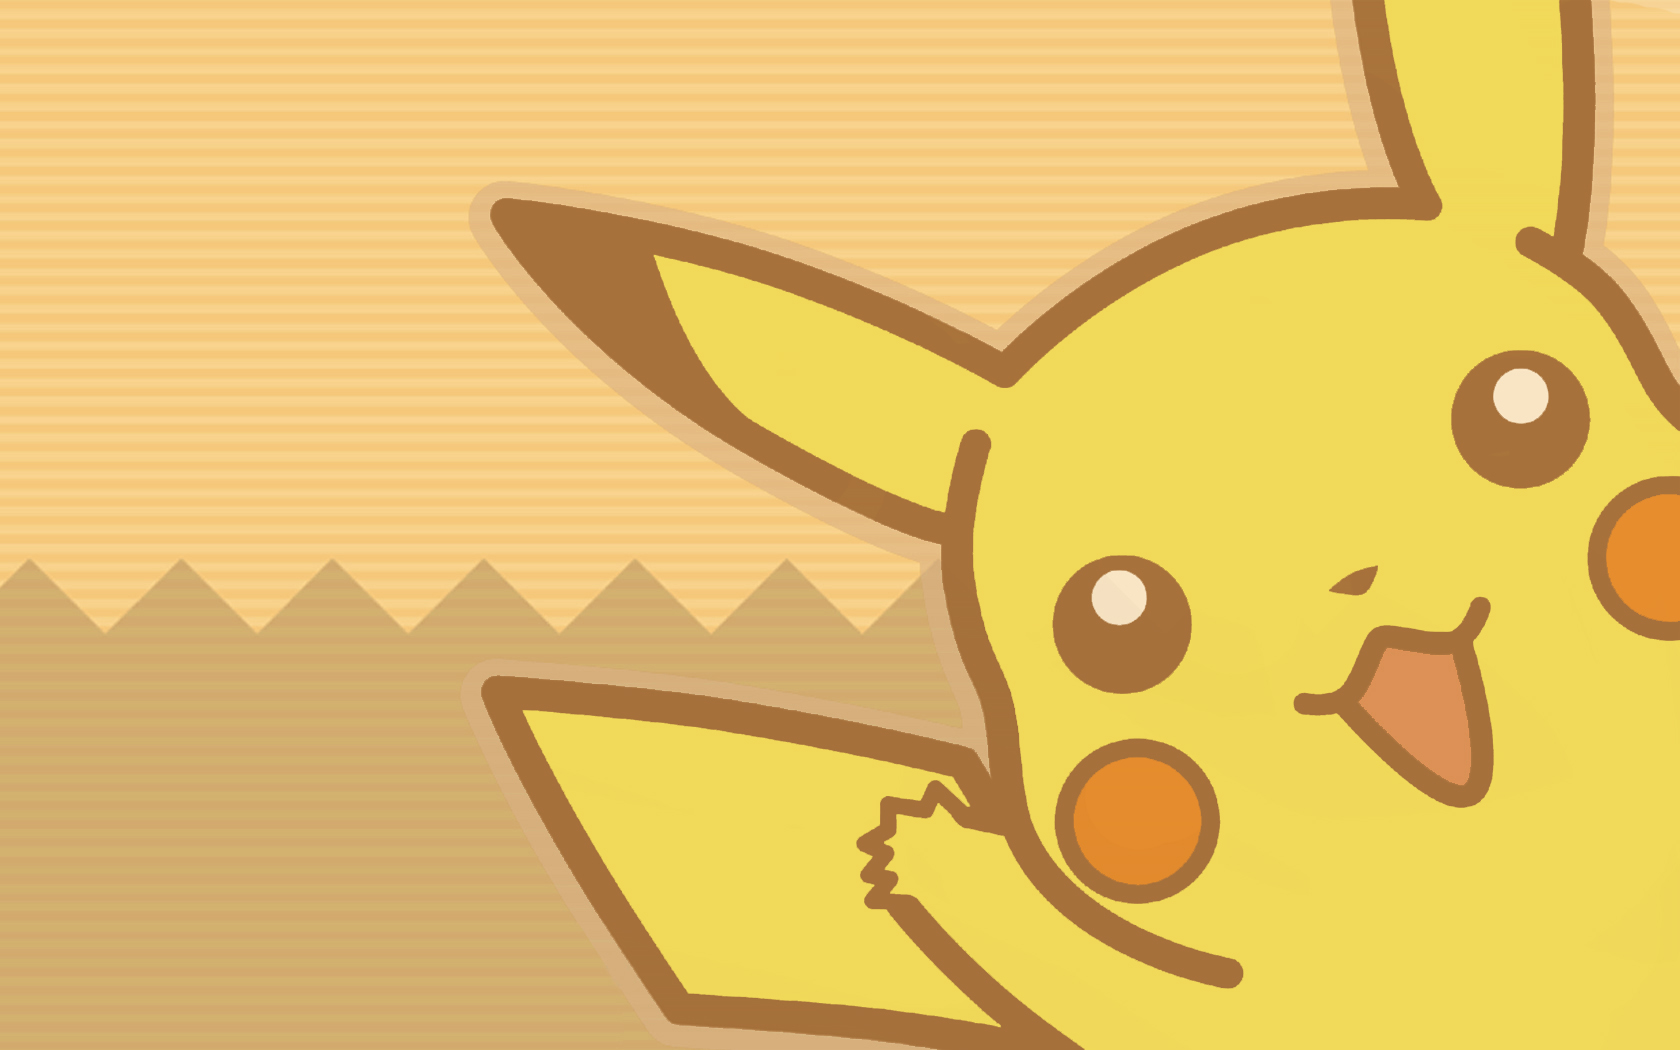 Cool Pikachu Wallpapers - WallpaperSafari